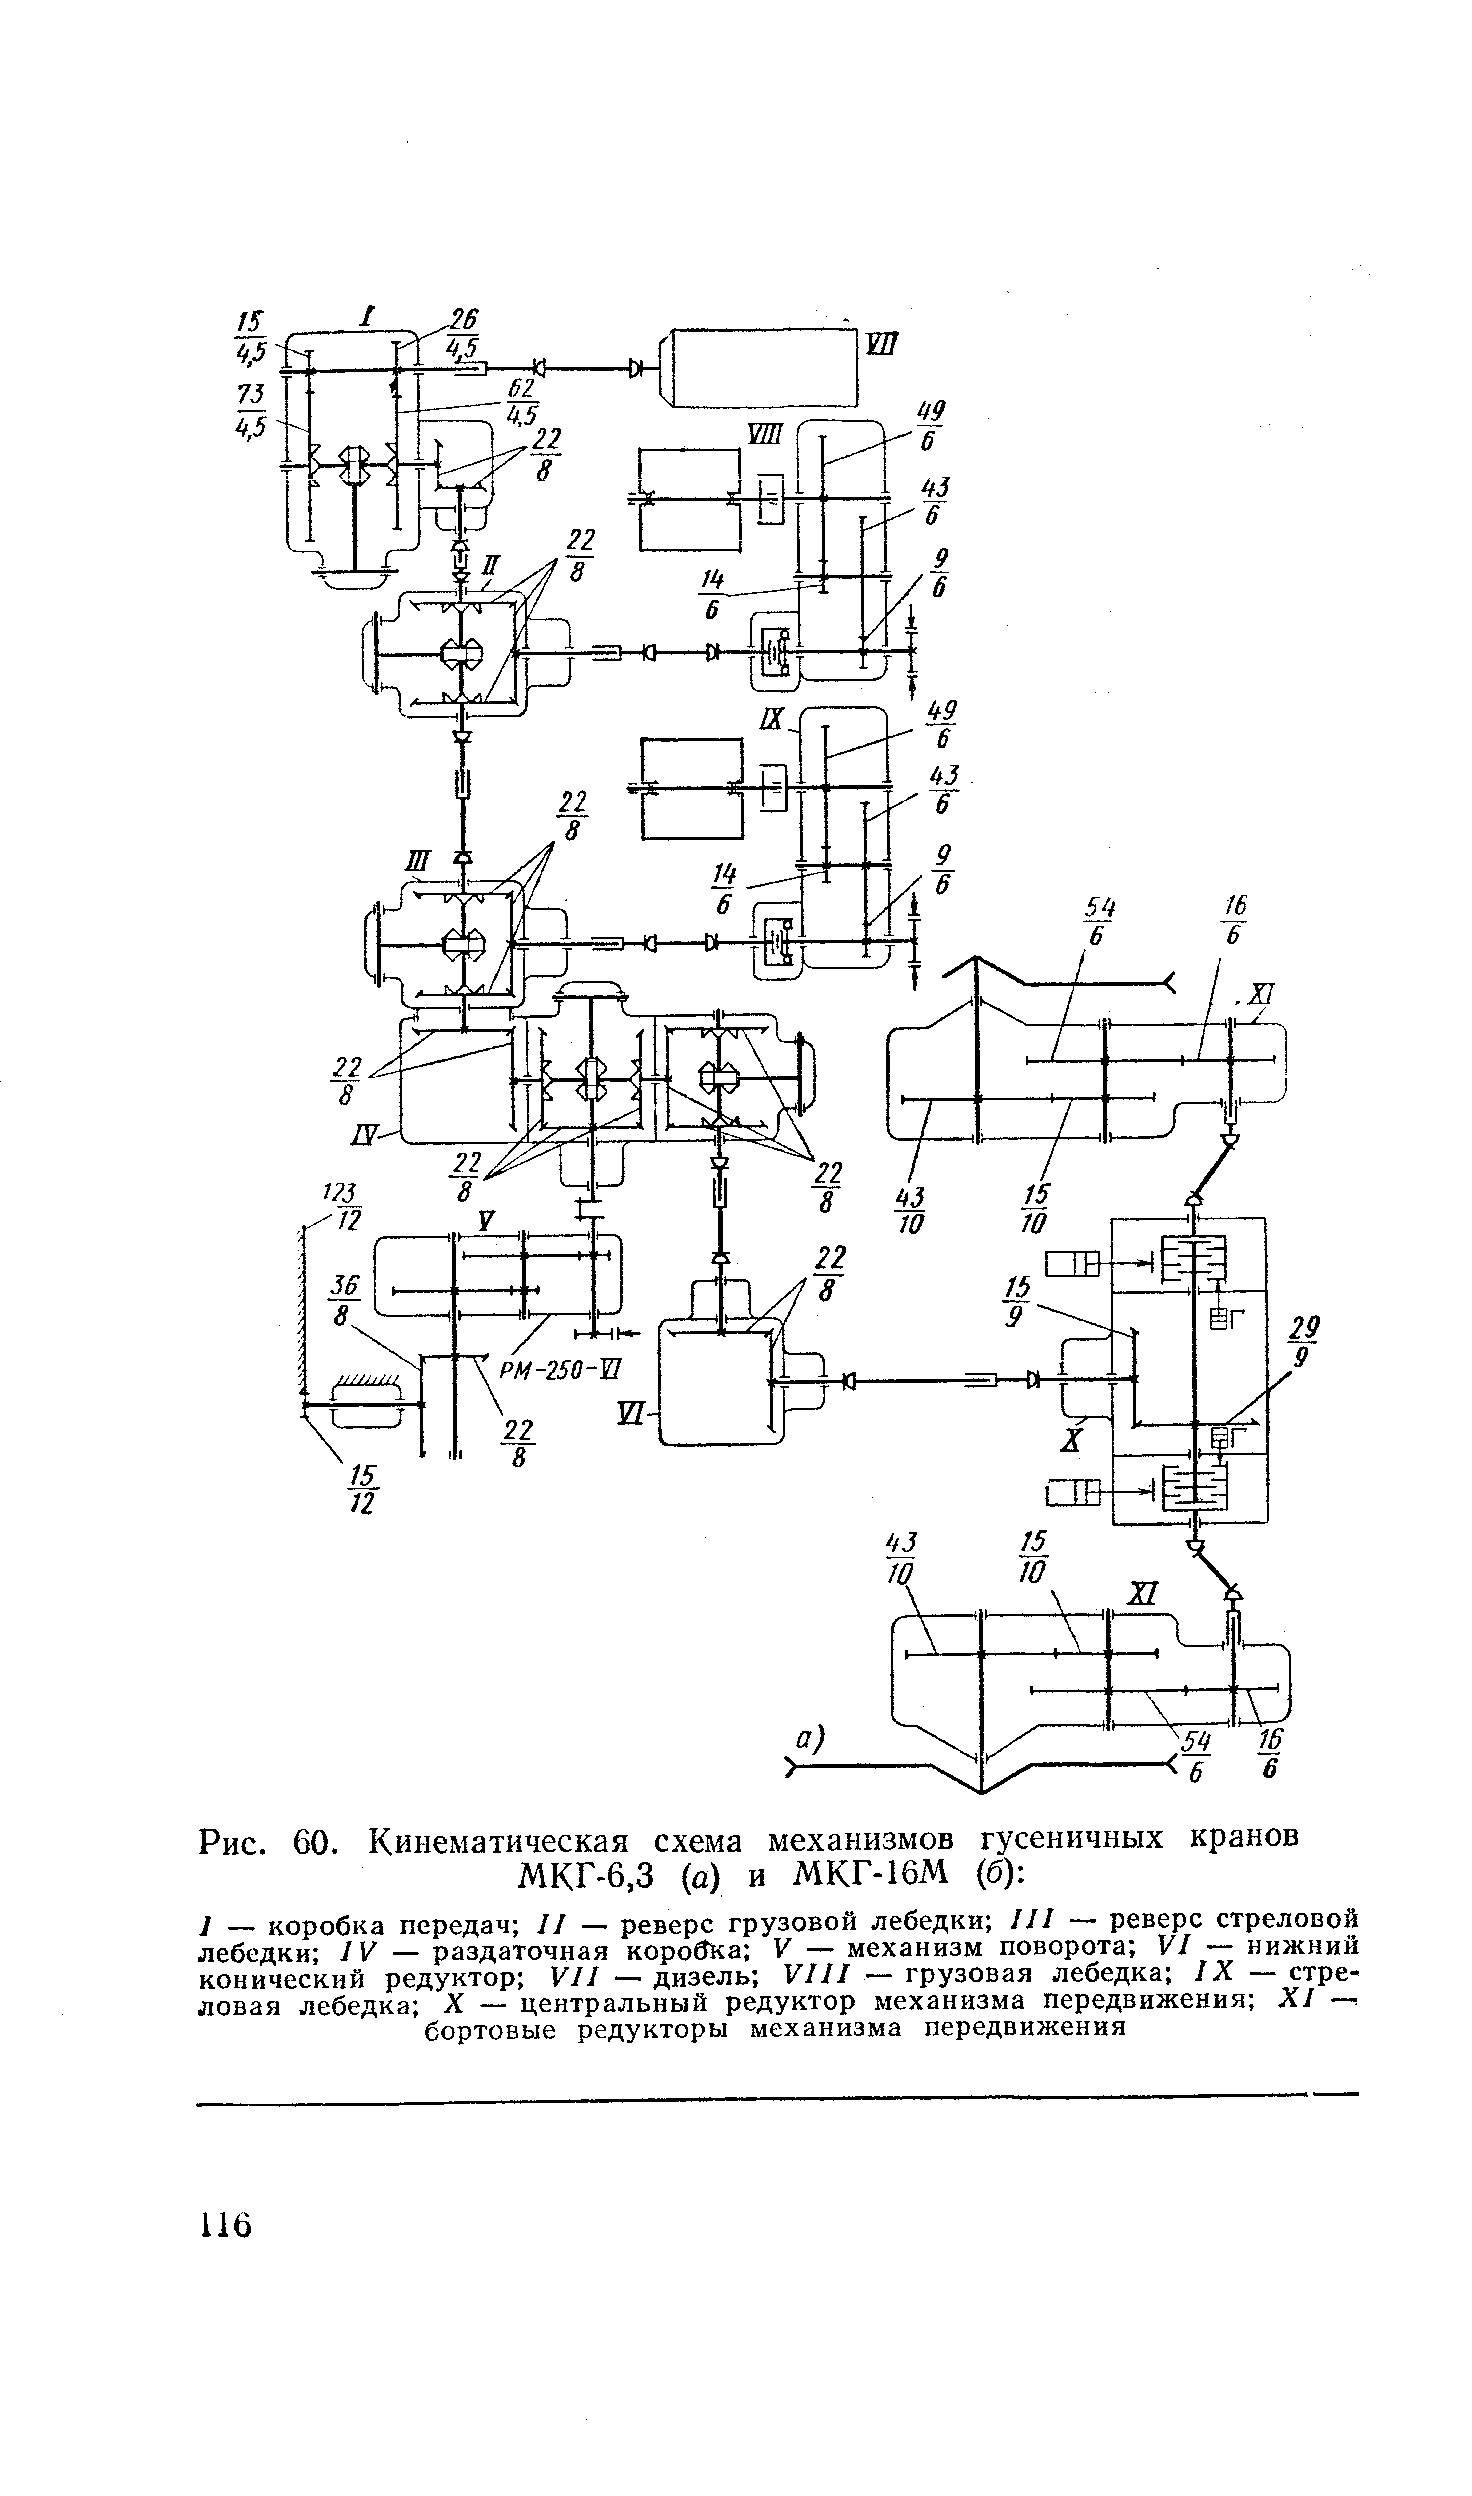 Рис. 60. Кинематическая схема механизмов гусеничных кранов МКГ-6,3 (а) и МКГ-16М (б) 
